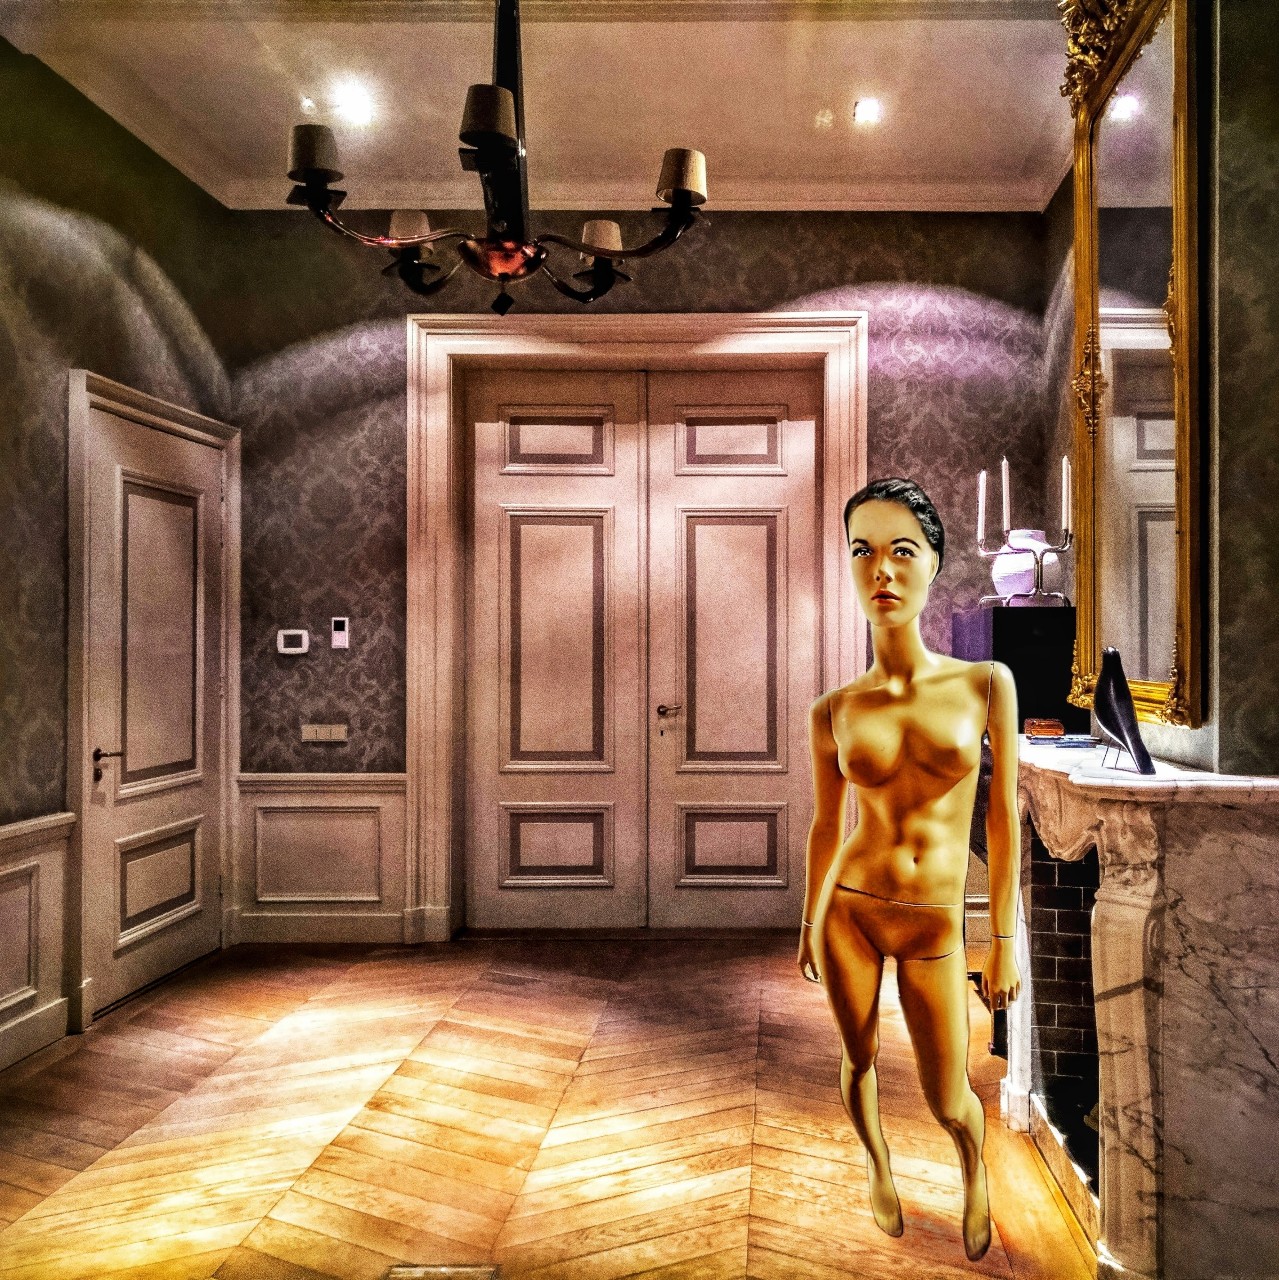 Een humanoïde (half mannequin, half etalagepop) wacht op meubels in een stijlvol, maar verder leeg interieur, in deze collage van Ruben van Gogh